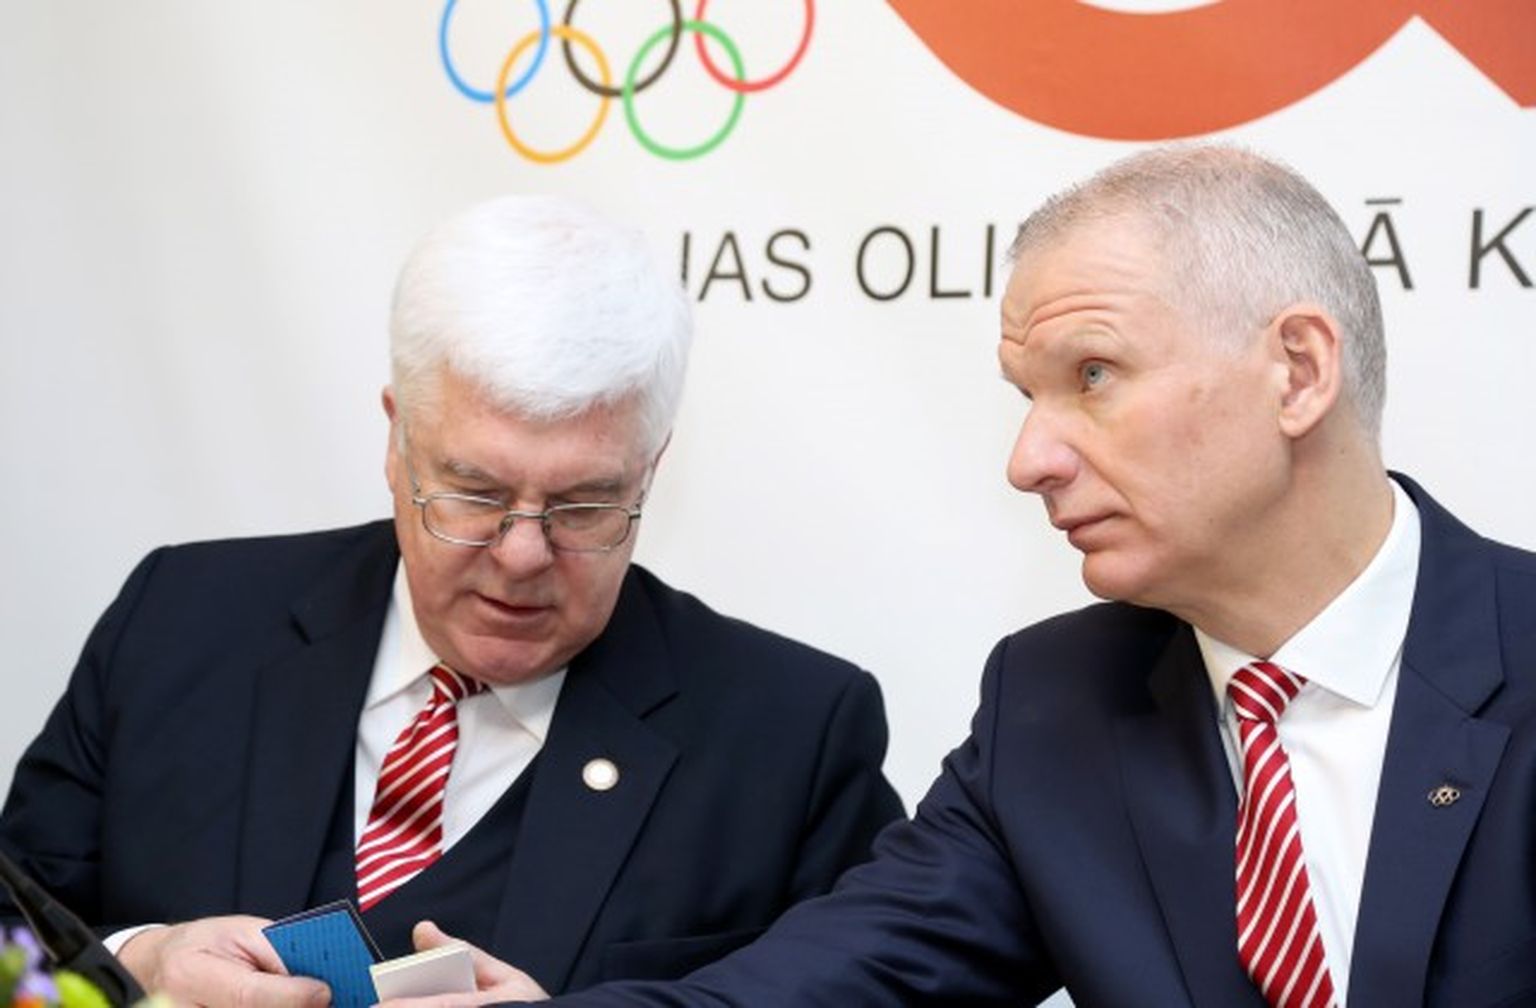 Latvijas Olimpiskās komitejas (LOK) prezidents Aldons Vrubļevskis (no kreisās) un ģenerālsekretārs Žoržs Tikmers